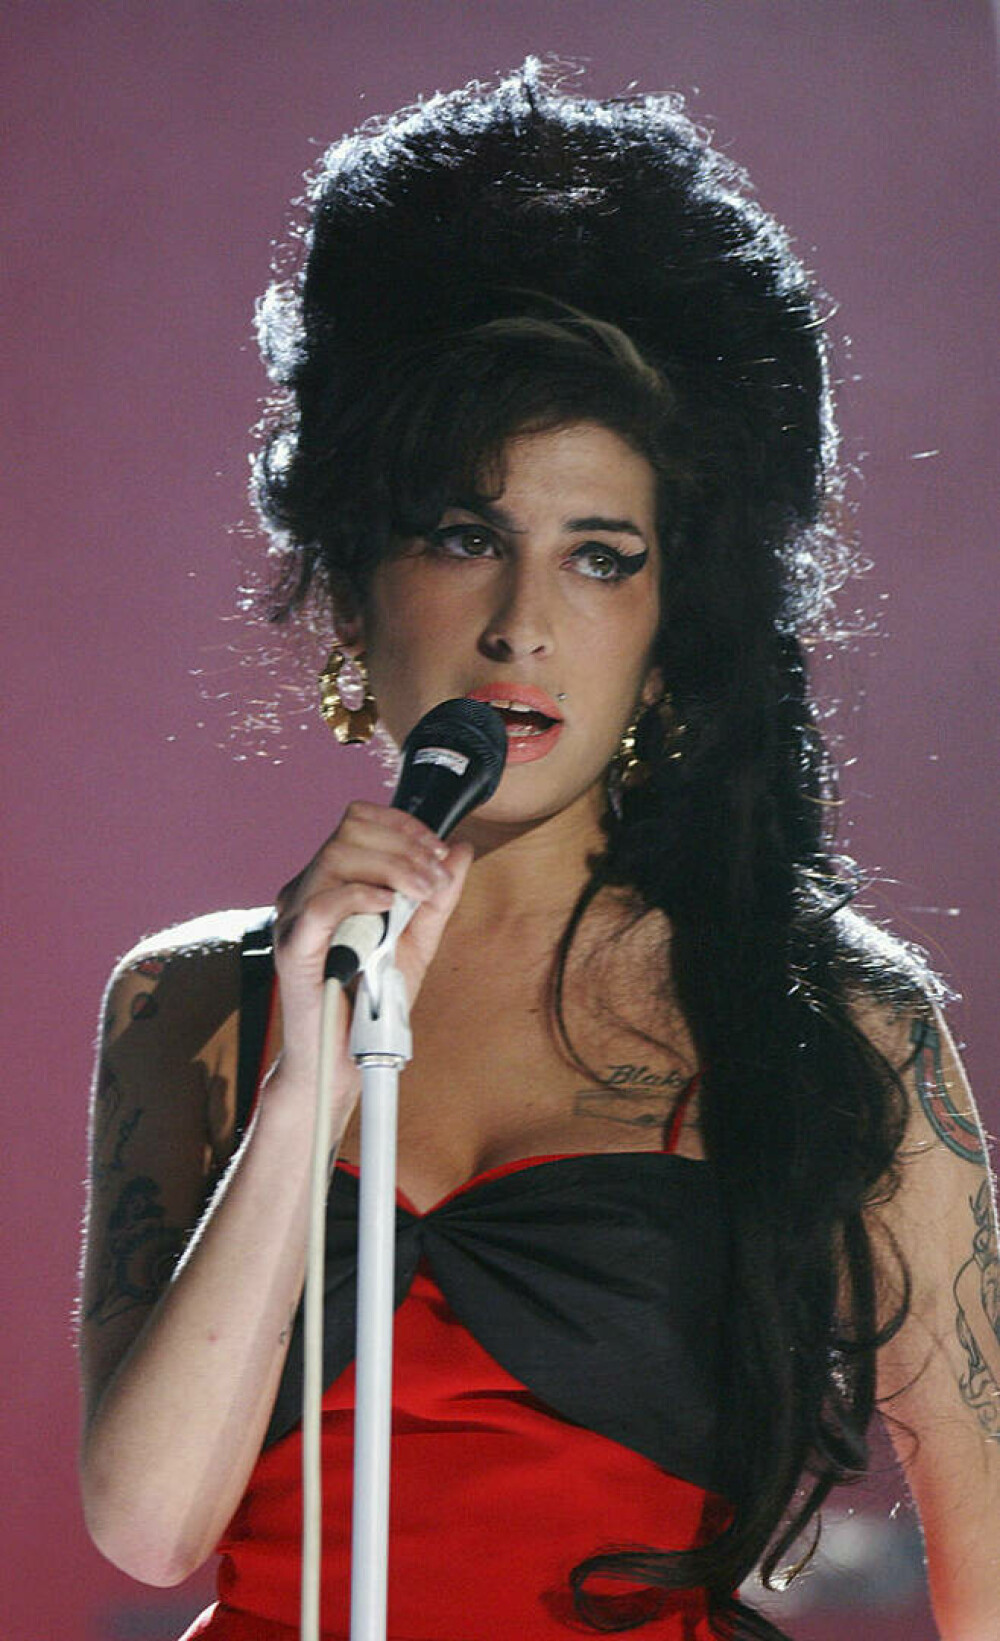 Imagini de colecție cu Amy Winehouse. Cântăreața ar fi împlinit astăzi 40 de ani | FOTO - Imaginea 2